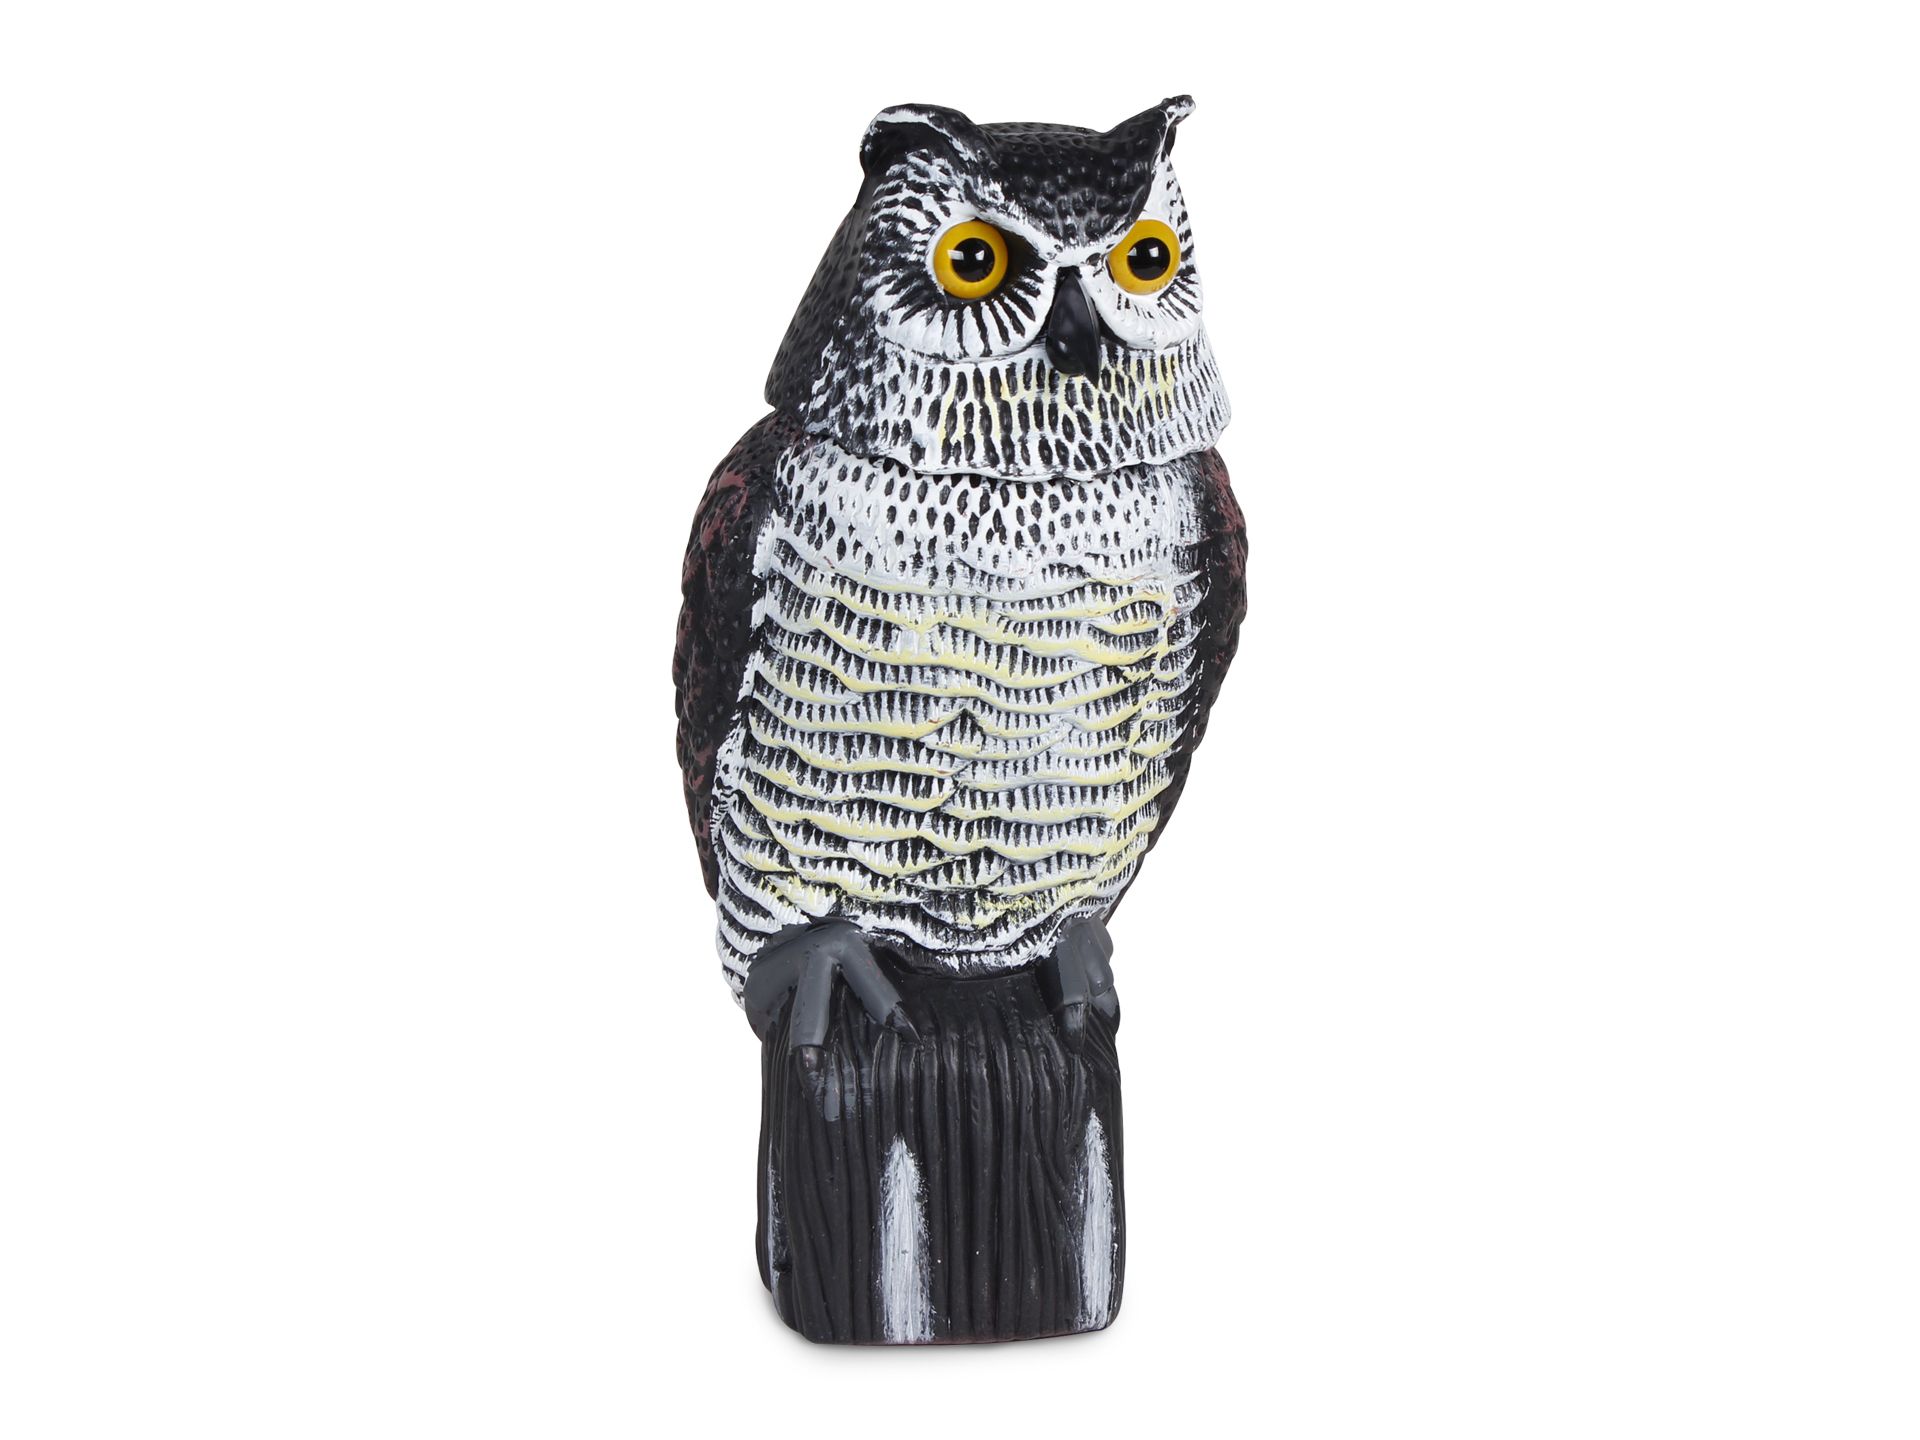 Garden Protection Repellent Bird Scarer Rotating Head Owl Statue